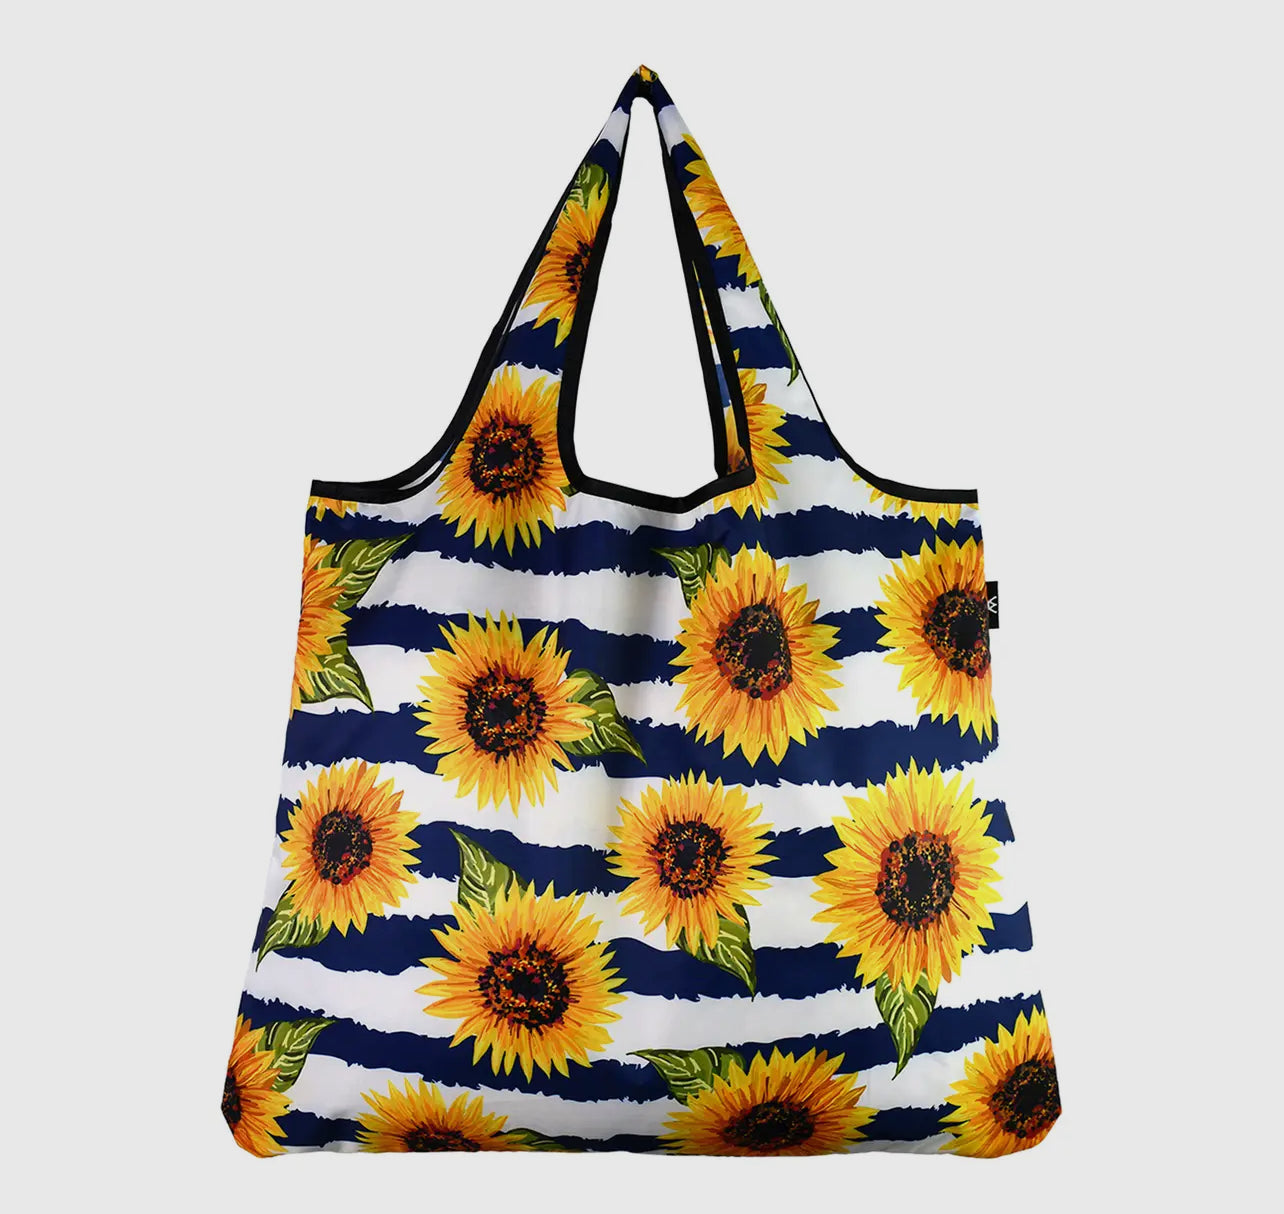 YayBag Jumbo Sunflower Reusable Shopping Tote